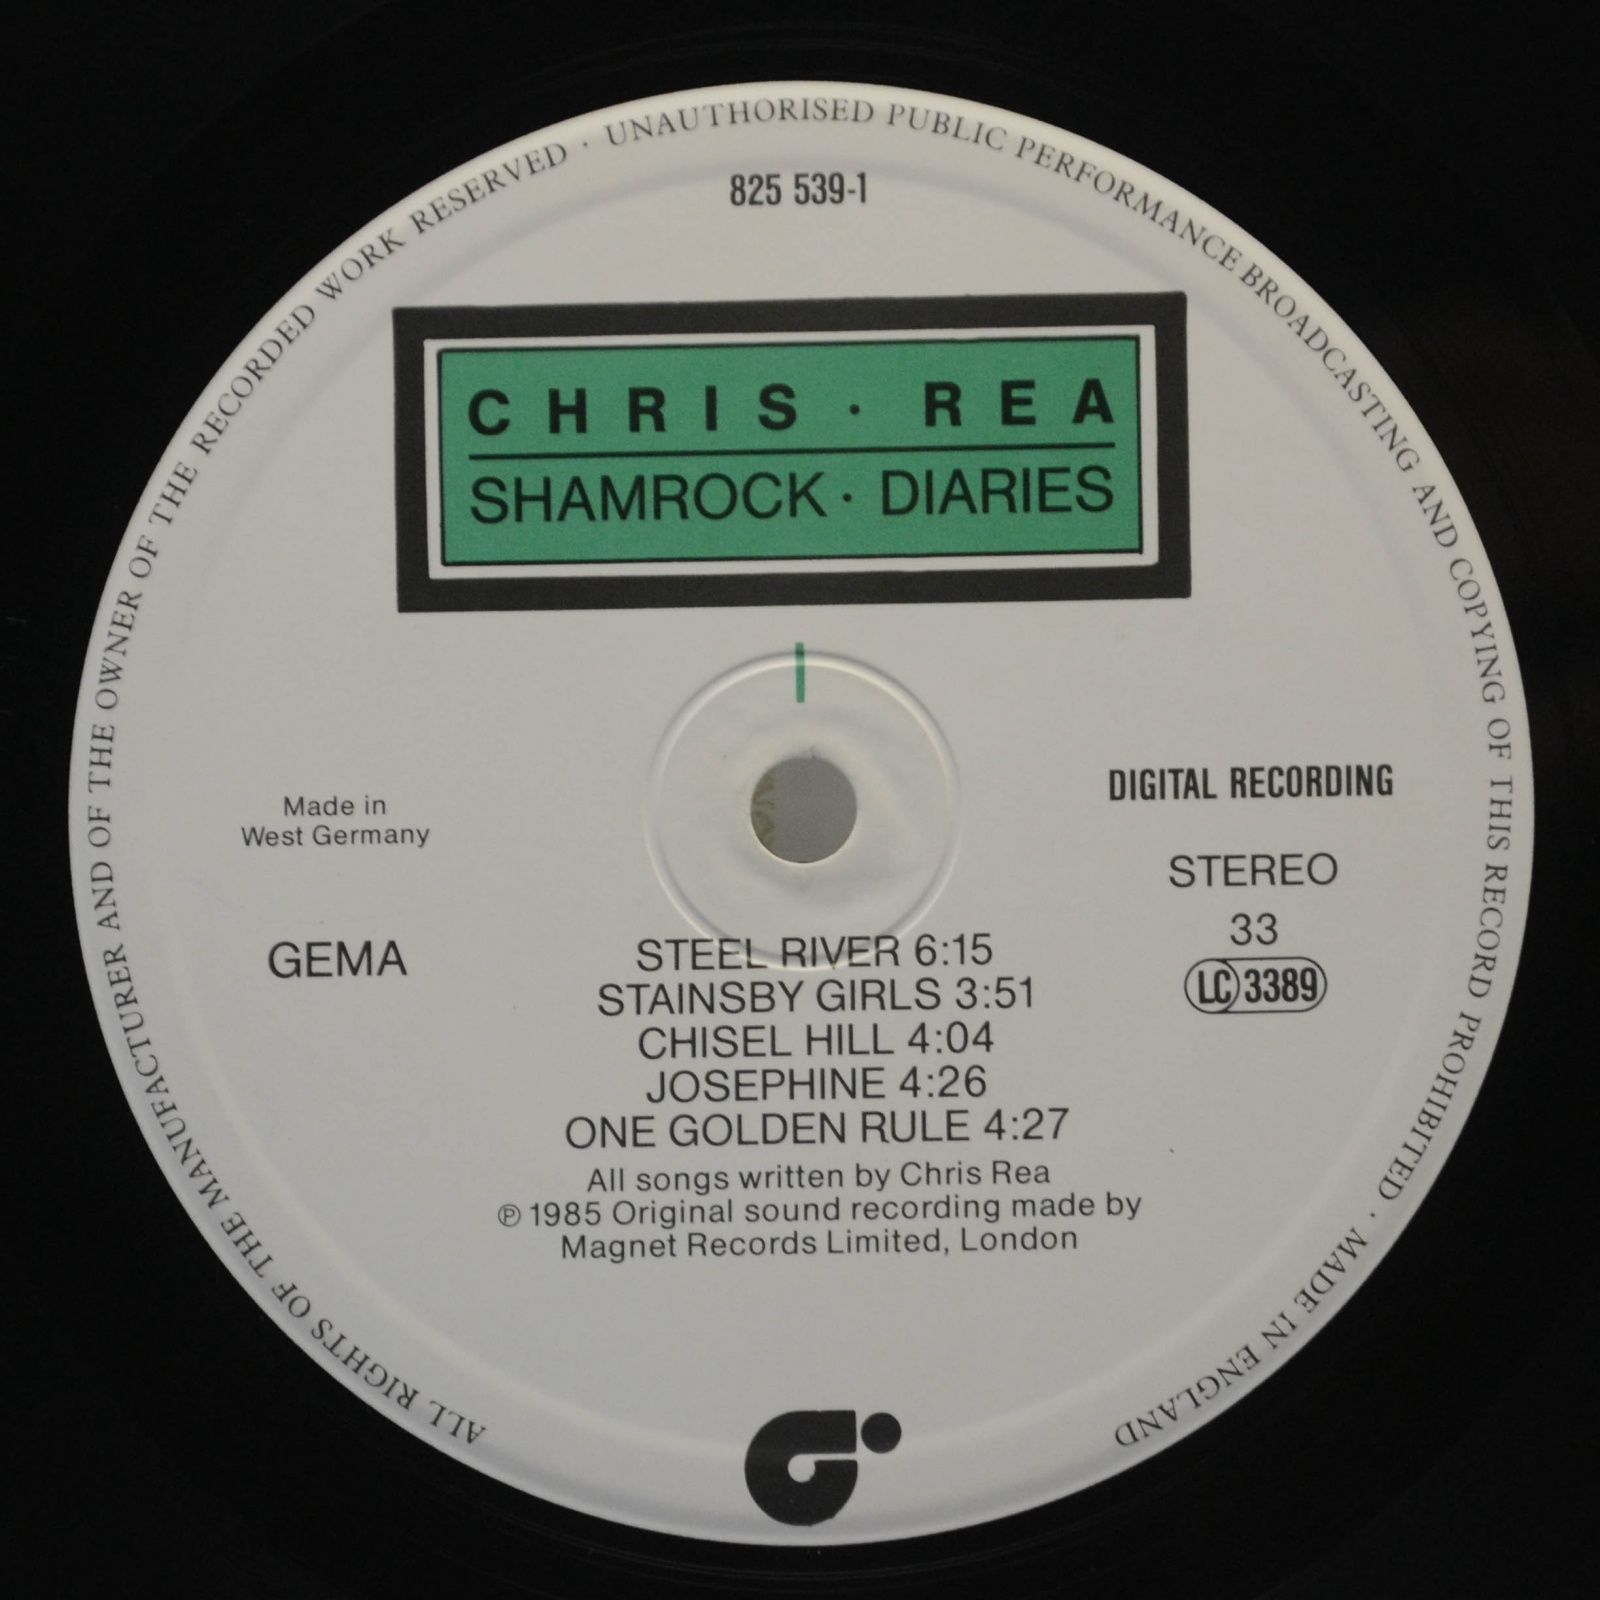 Chris Rea — Shamrock Diaries, 1985